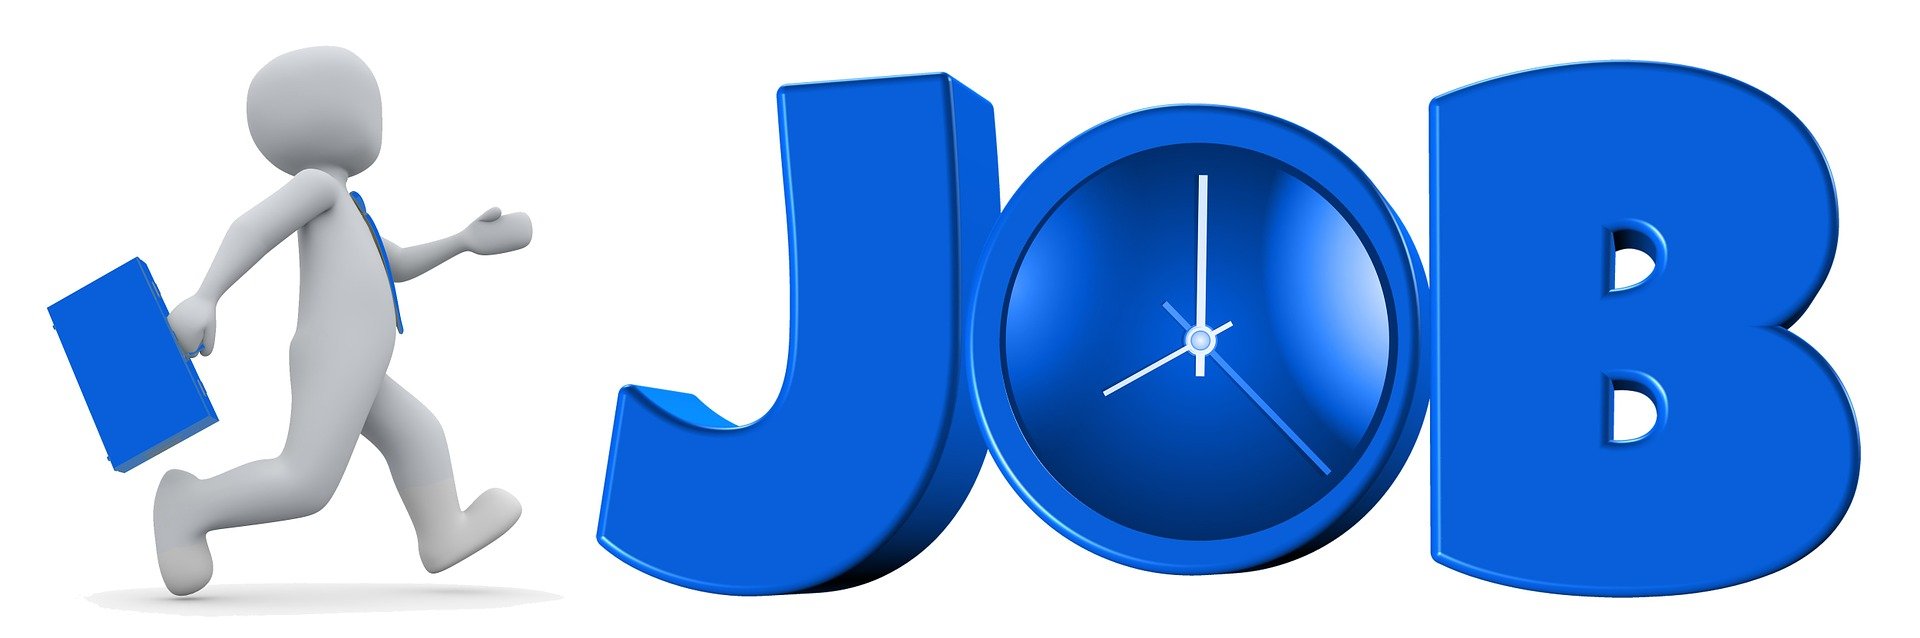 Na zdjęciu znajduje się napis "Praca" w j. angielskim, czyli ""JOB". Napis jest w kolorze niebieskim. Obok grafiki znajduje się biały ludzik z niebieską teczką.